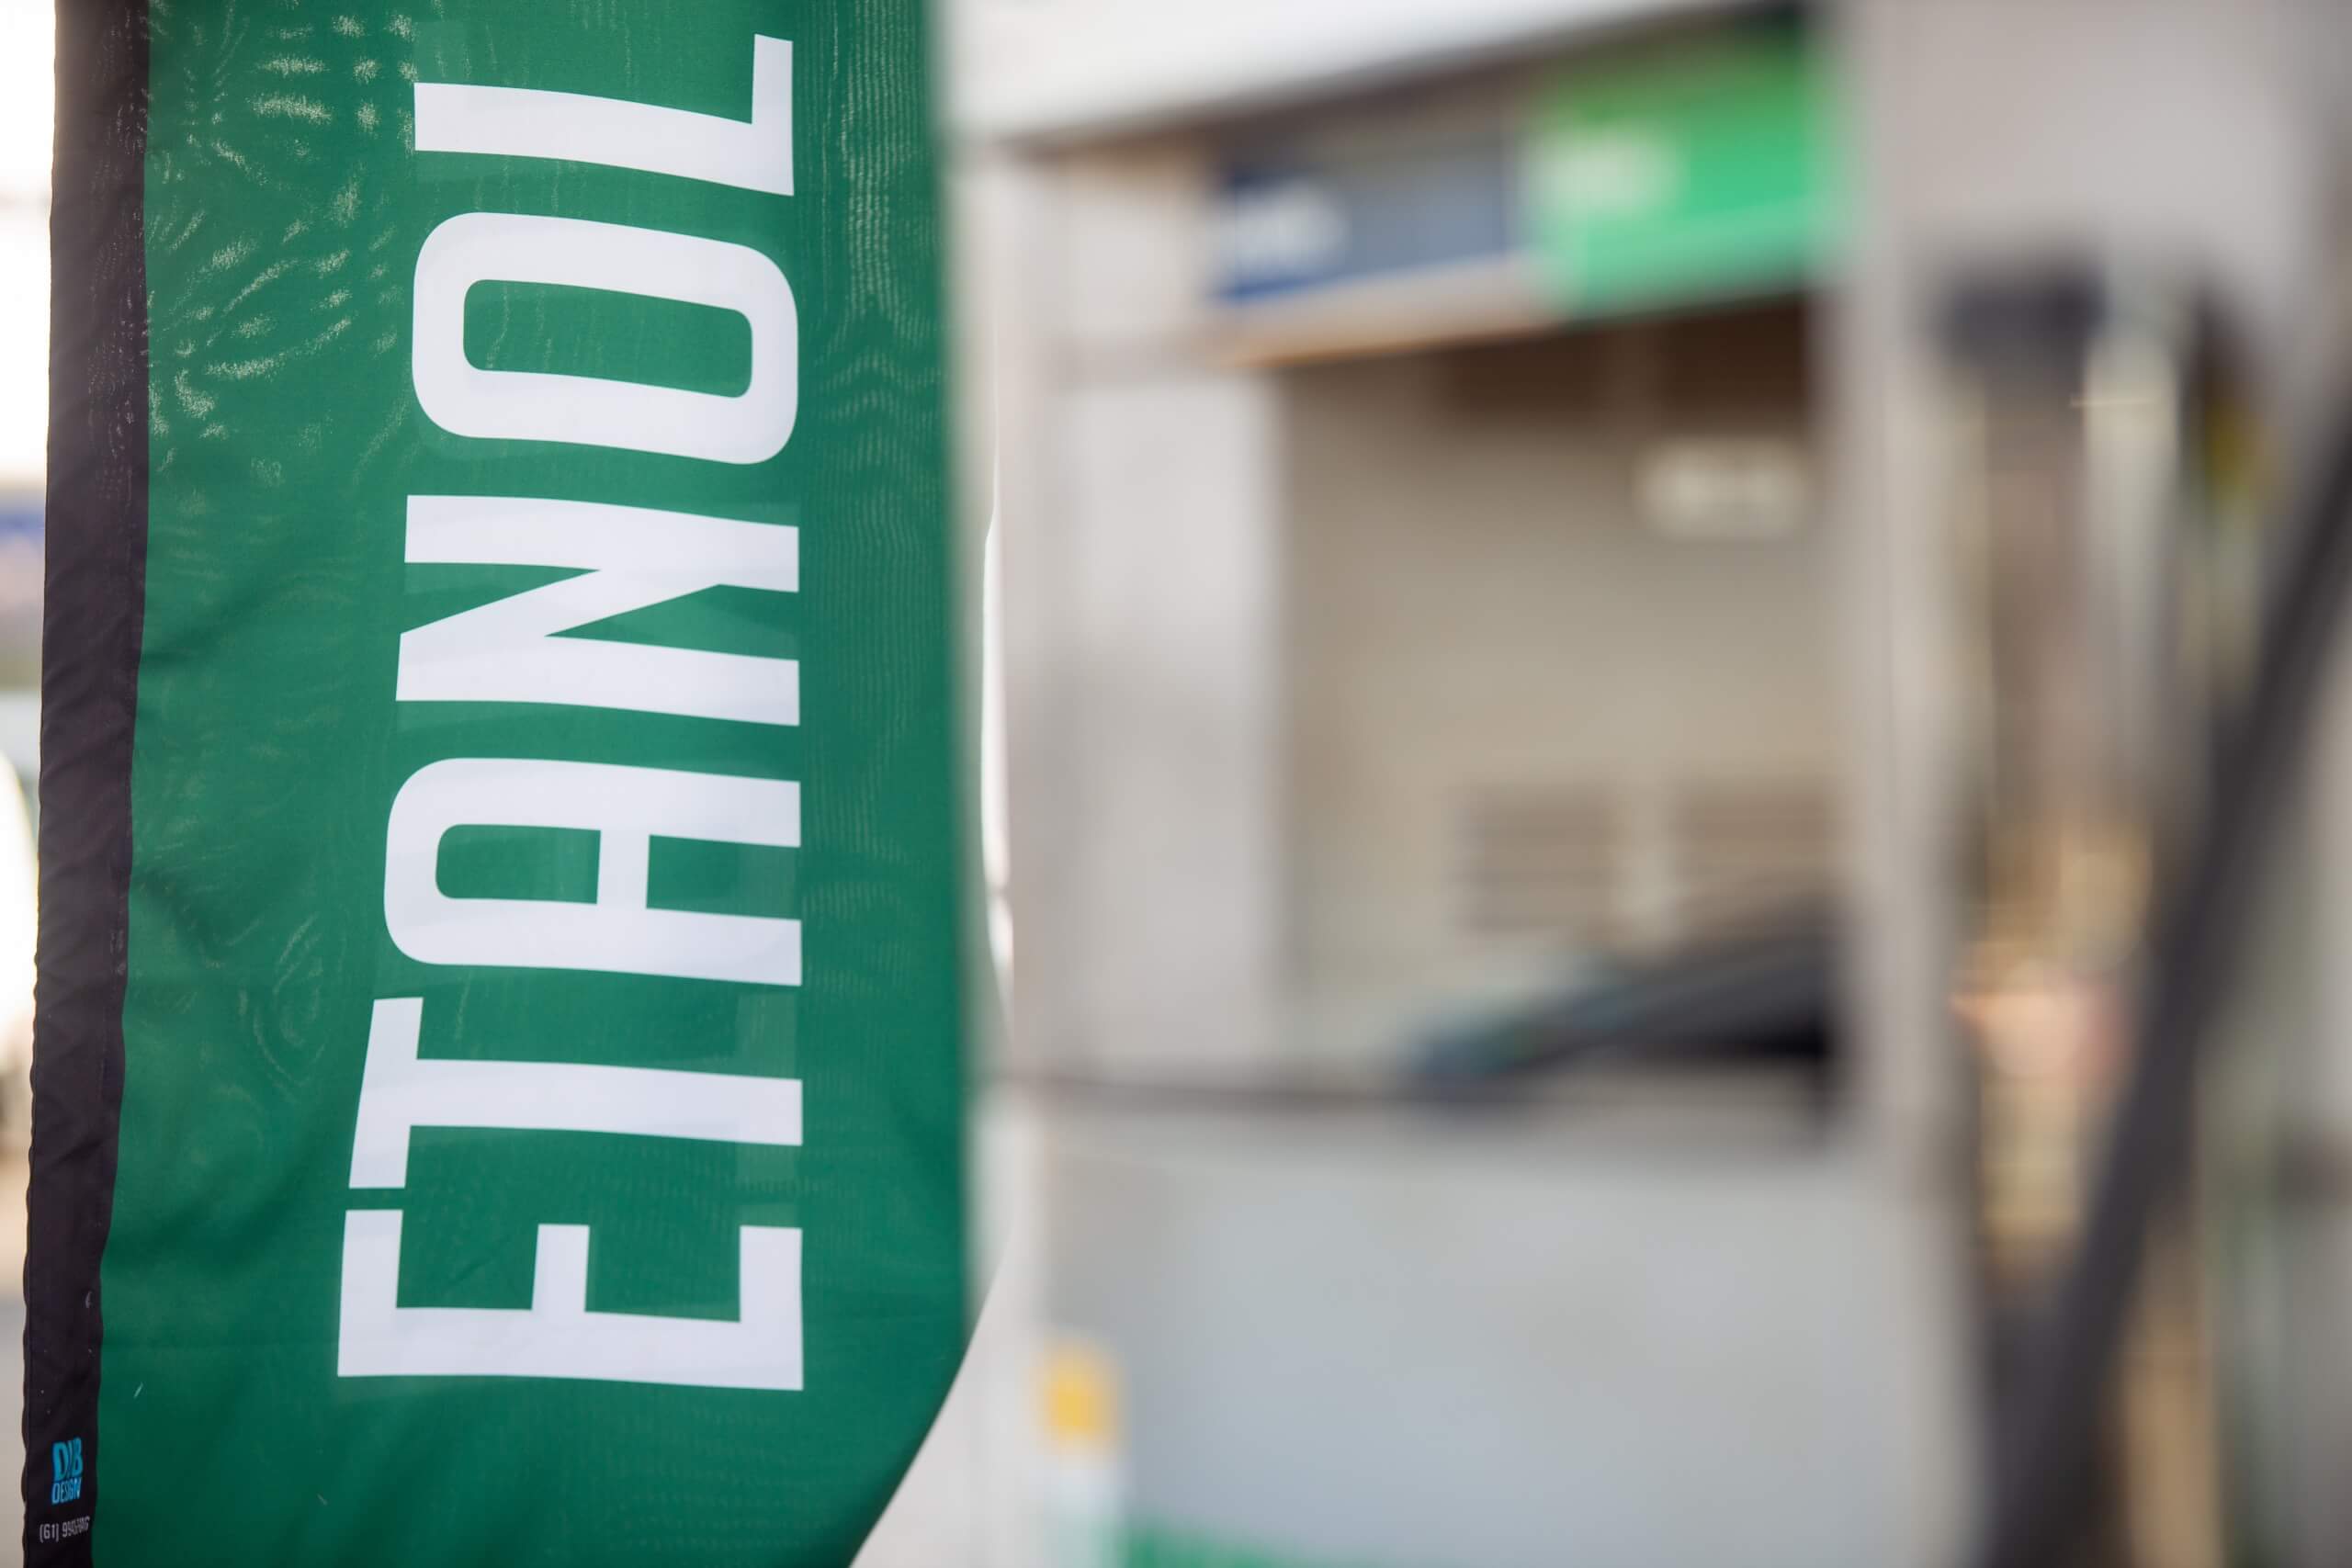 Vendas de etanol totalizam 2,12 bilhões de litros em fevereiro